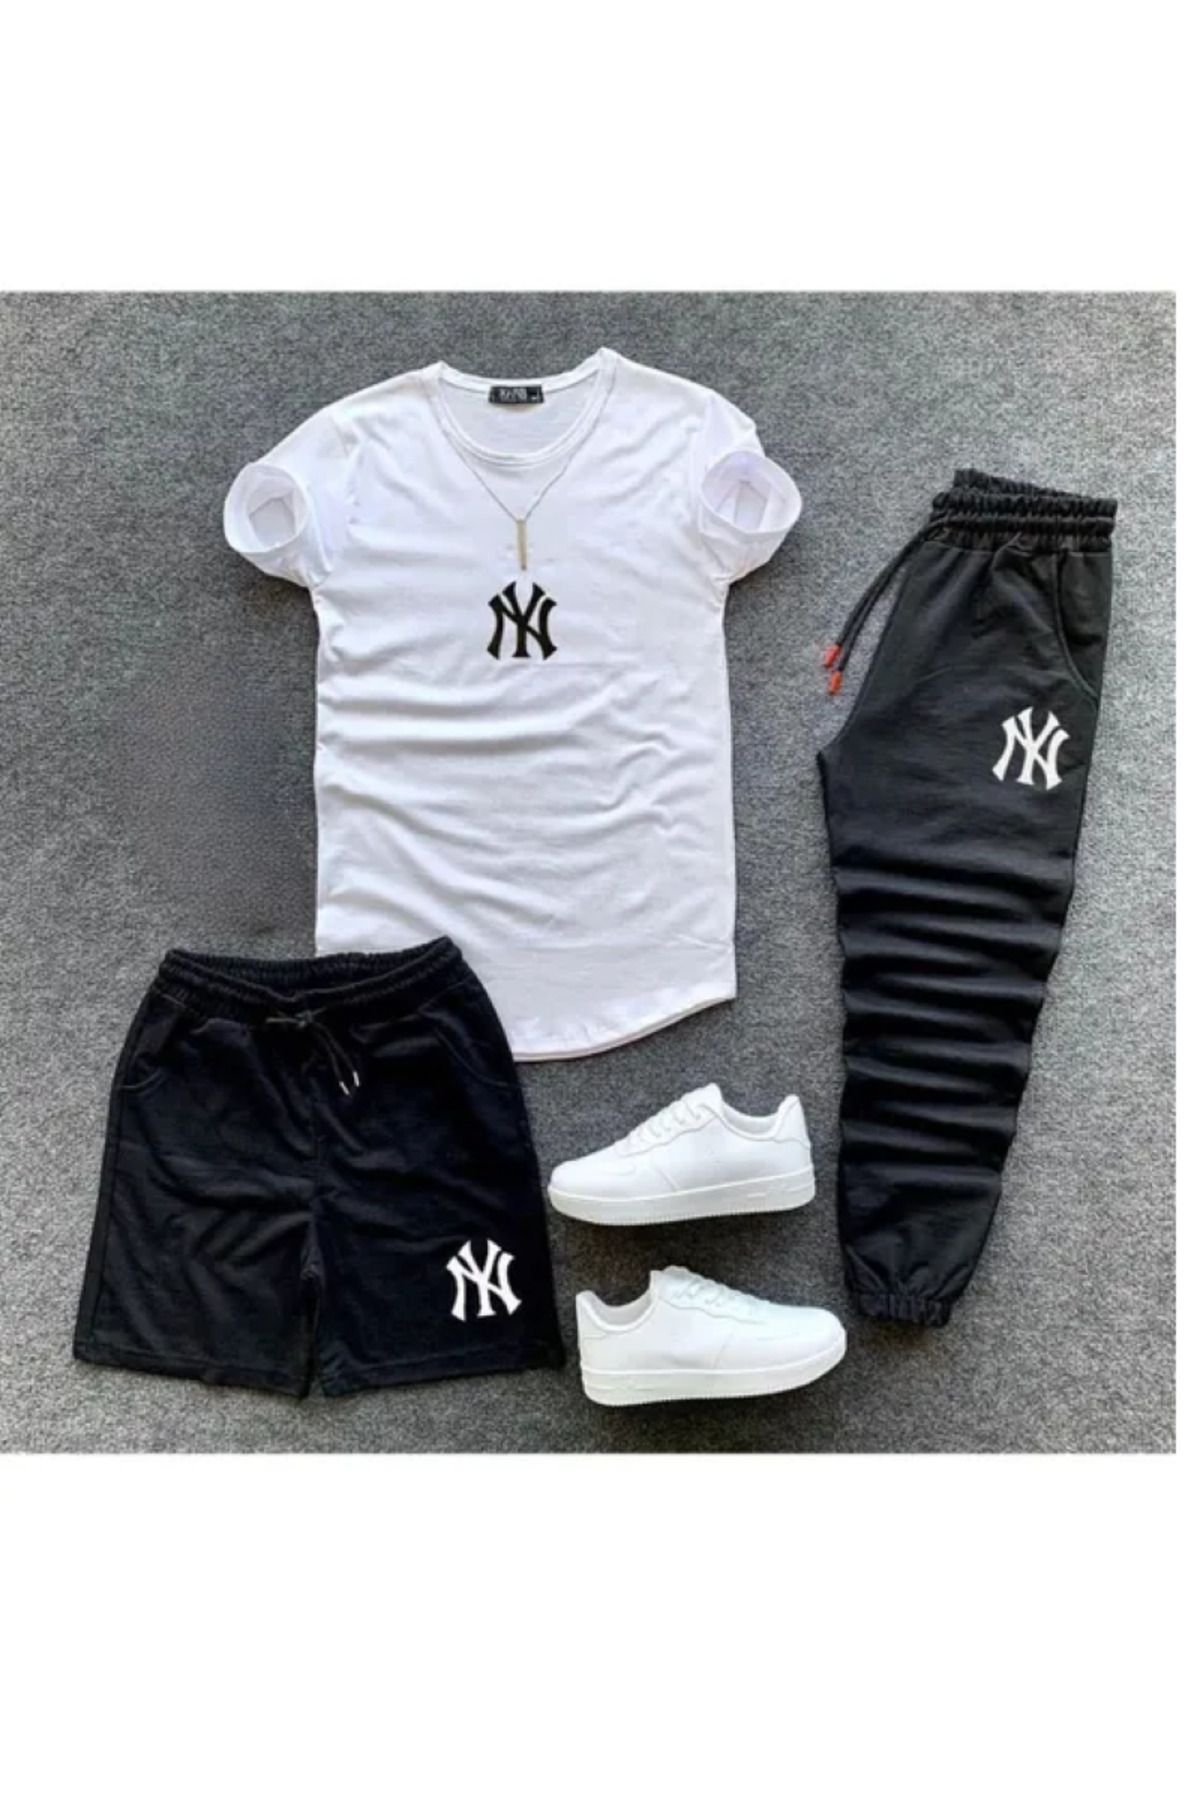 Genel Markalar NY Baskılı Original Ünisex Yazlık Şort T-shirt Eşofman Altı 3 lü Set Combin Takım